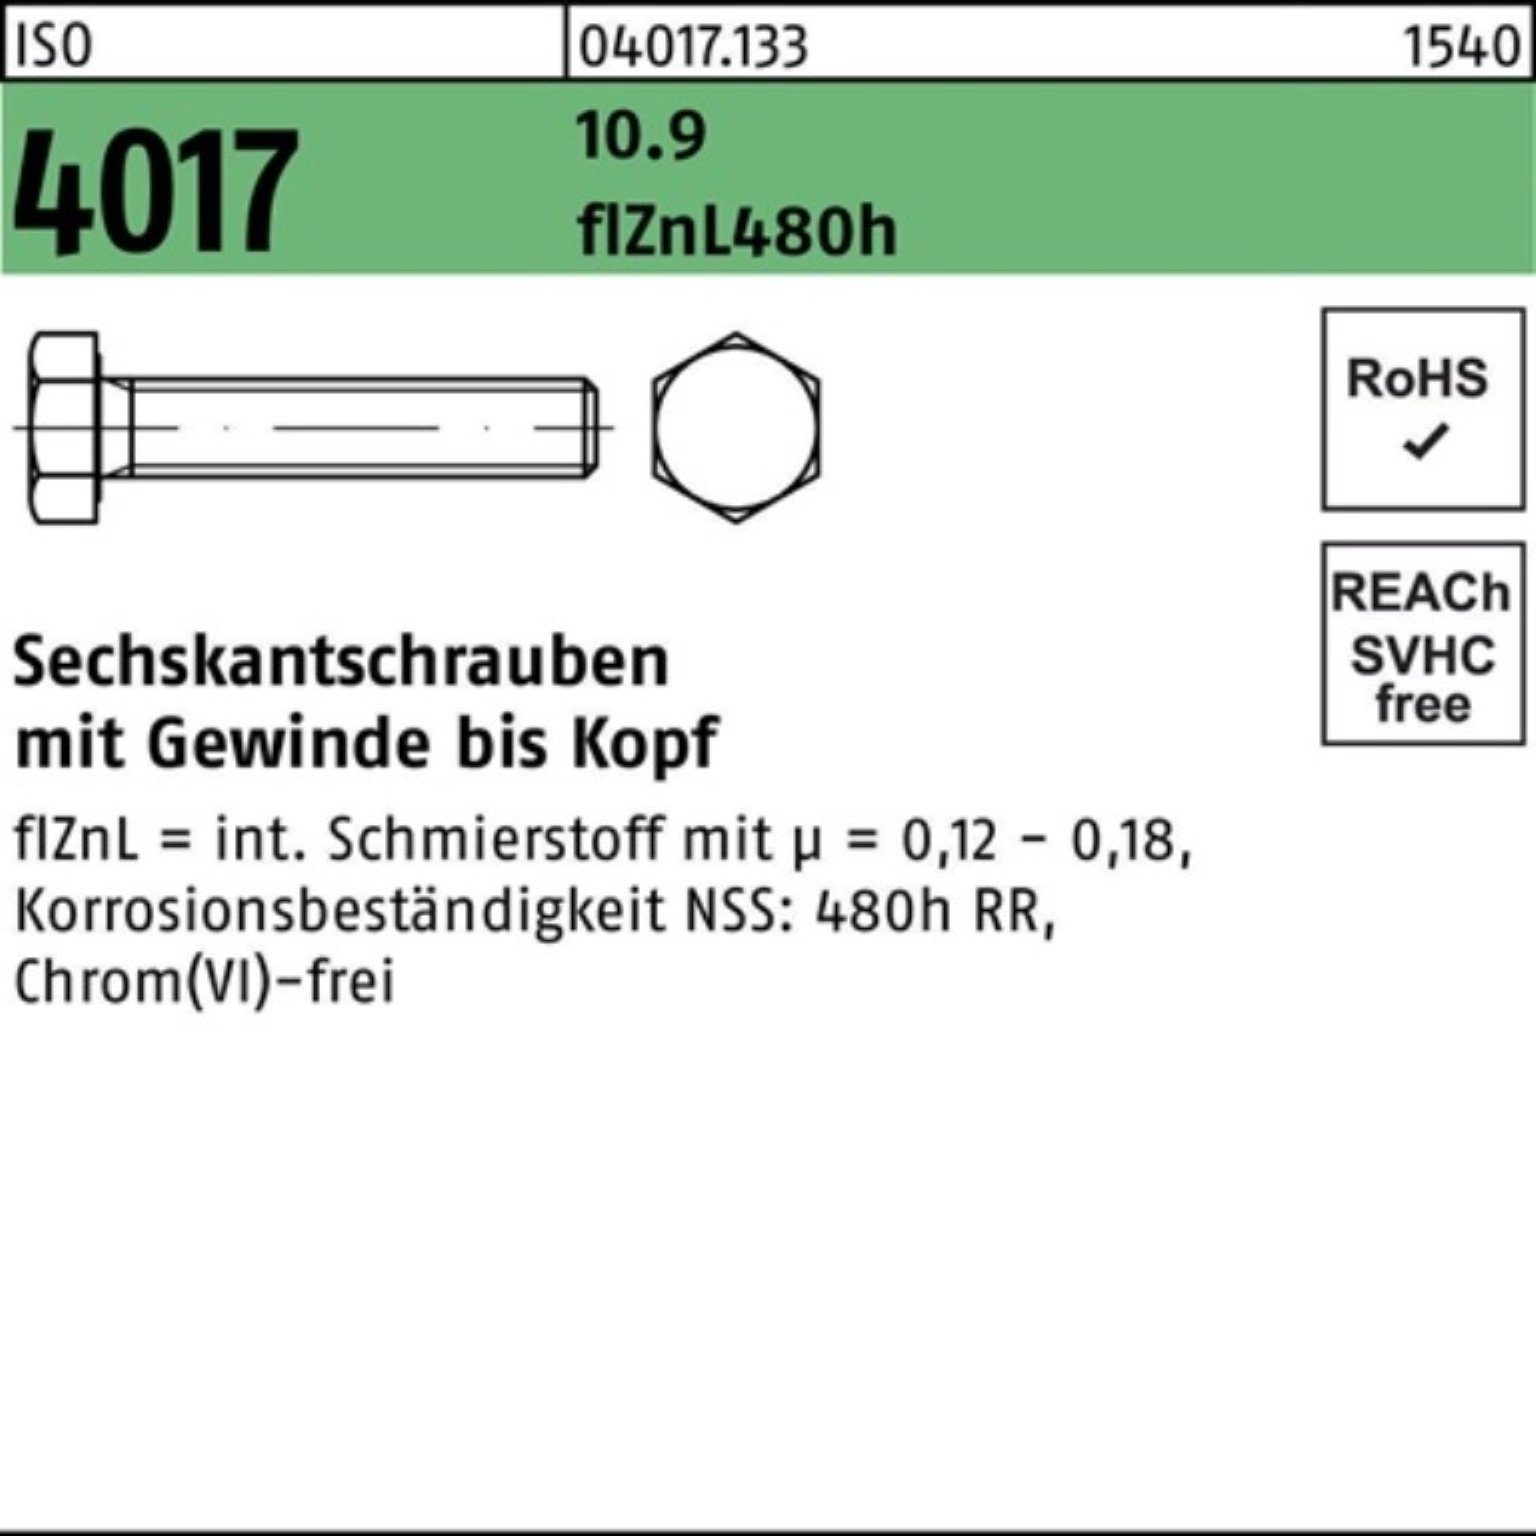 Bufab Sechskantschraube 75 4017 Sechskantschraube ISO 2 Pack 100er 10.9 VG M24x zinklamellenb